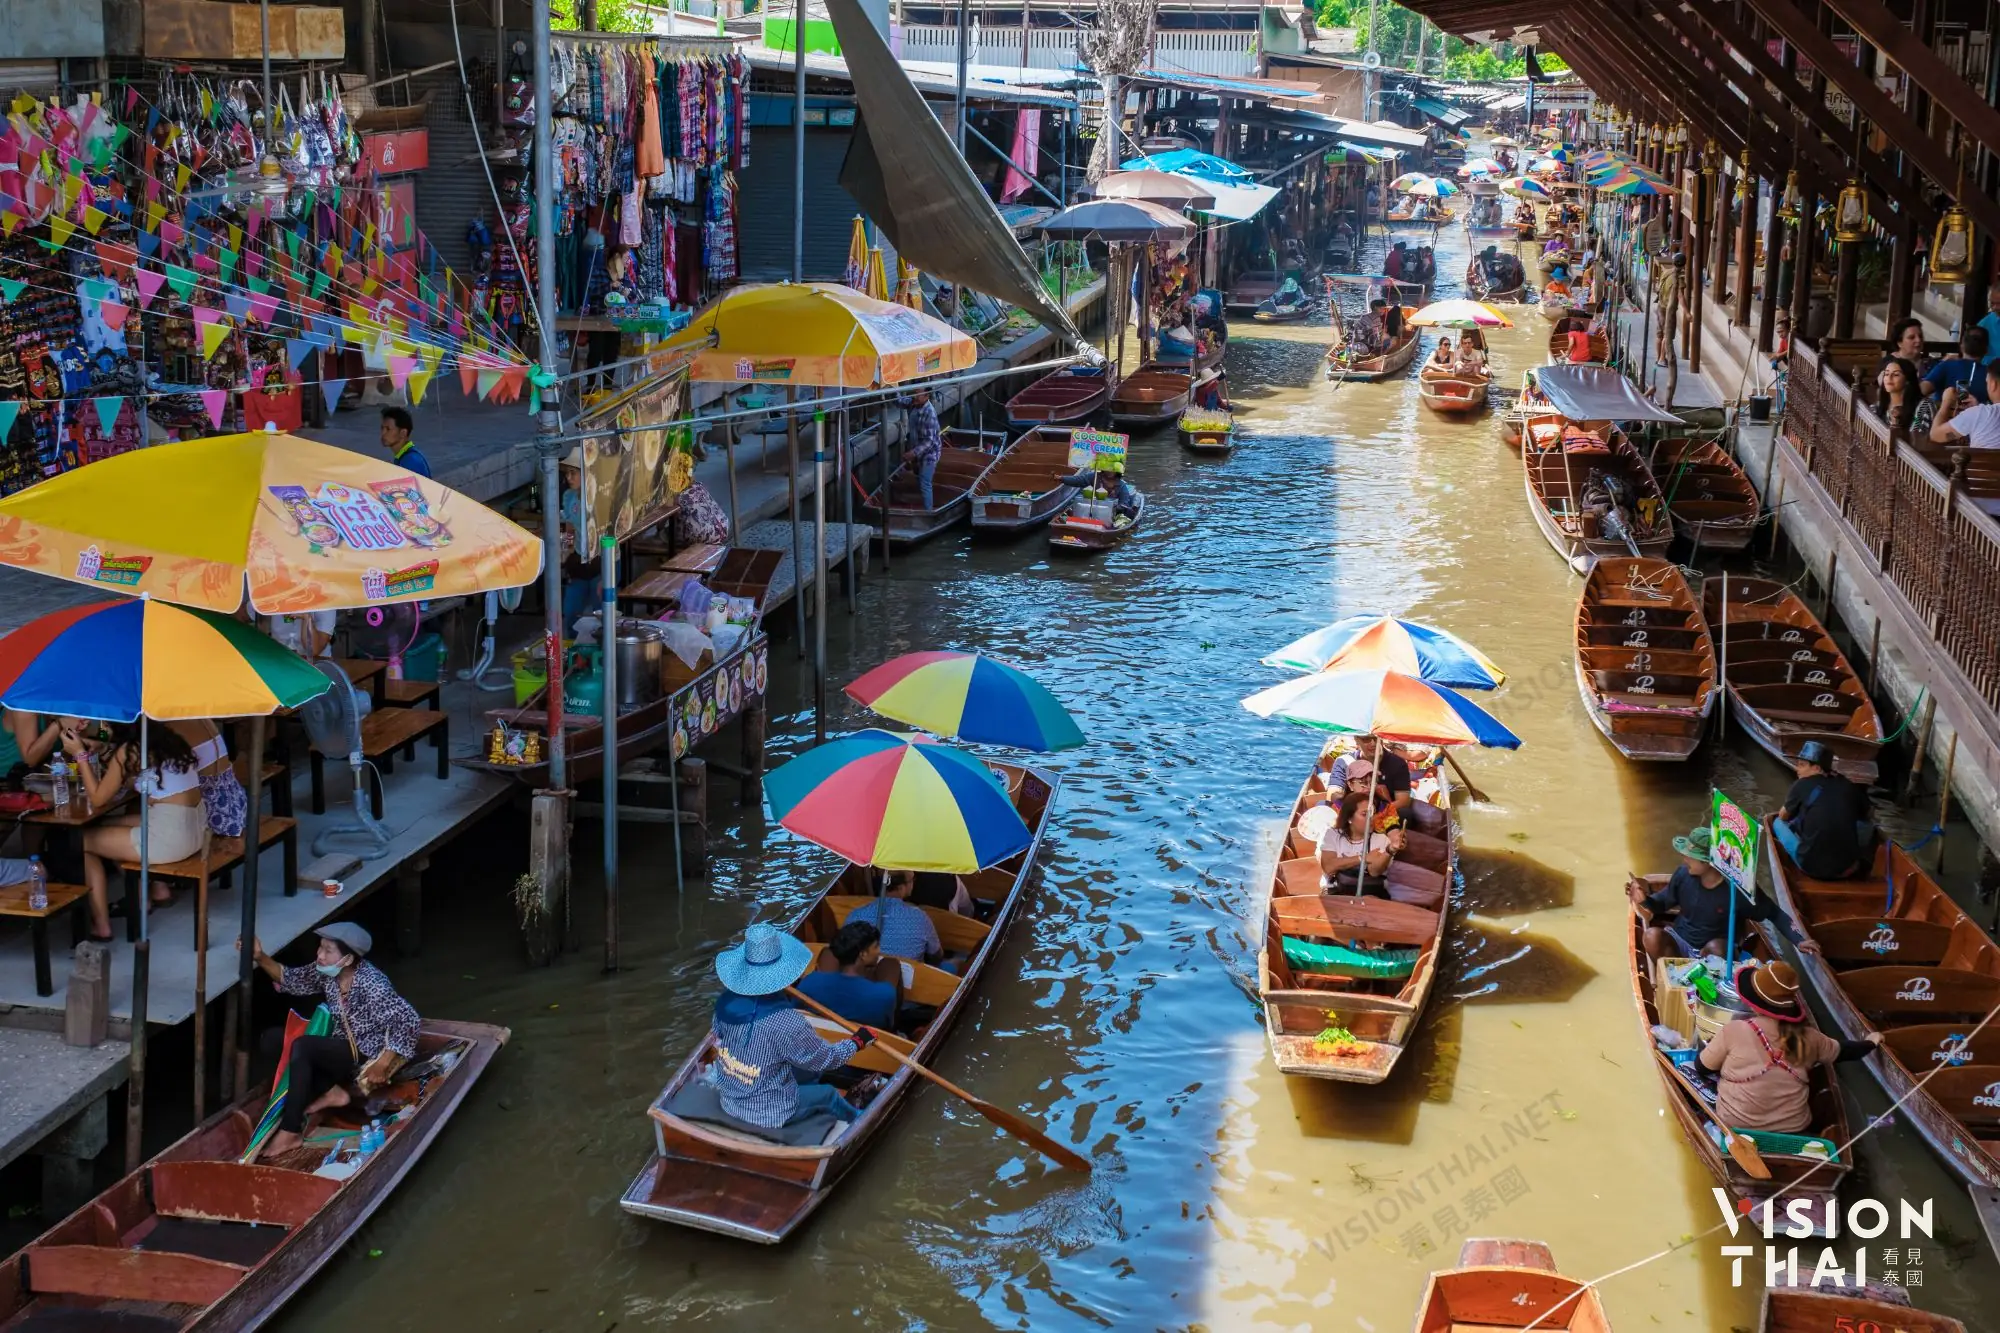 丹能莎朵水上市場已超過百年歷史，且是最知名、規模最大的水上市場，電影007曾到此取景（圖片來源：Vision Thai 看見泰國）